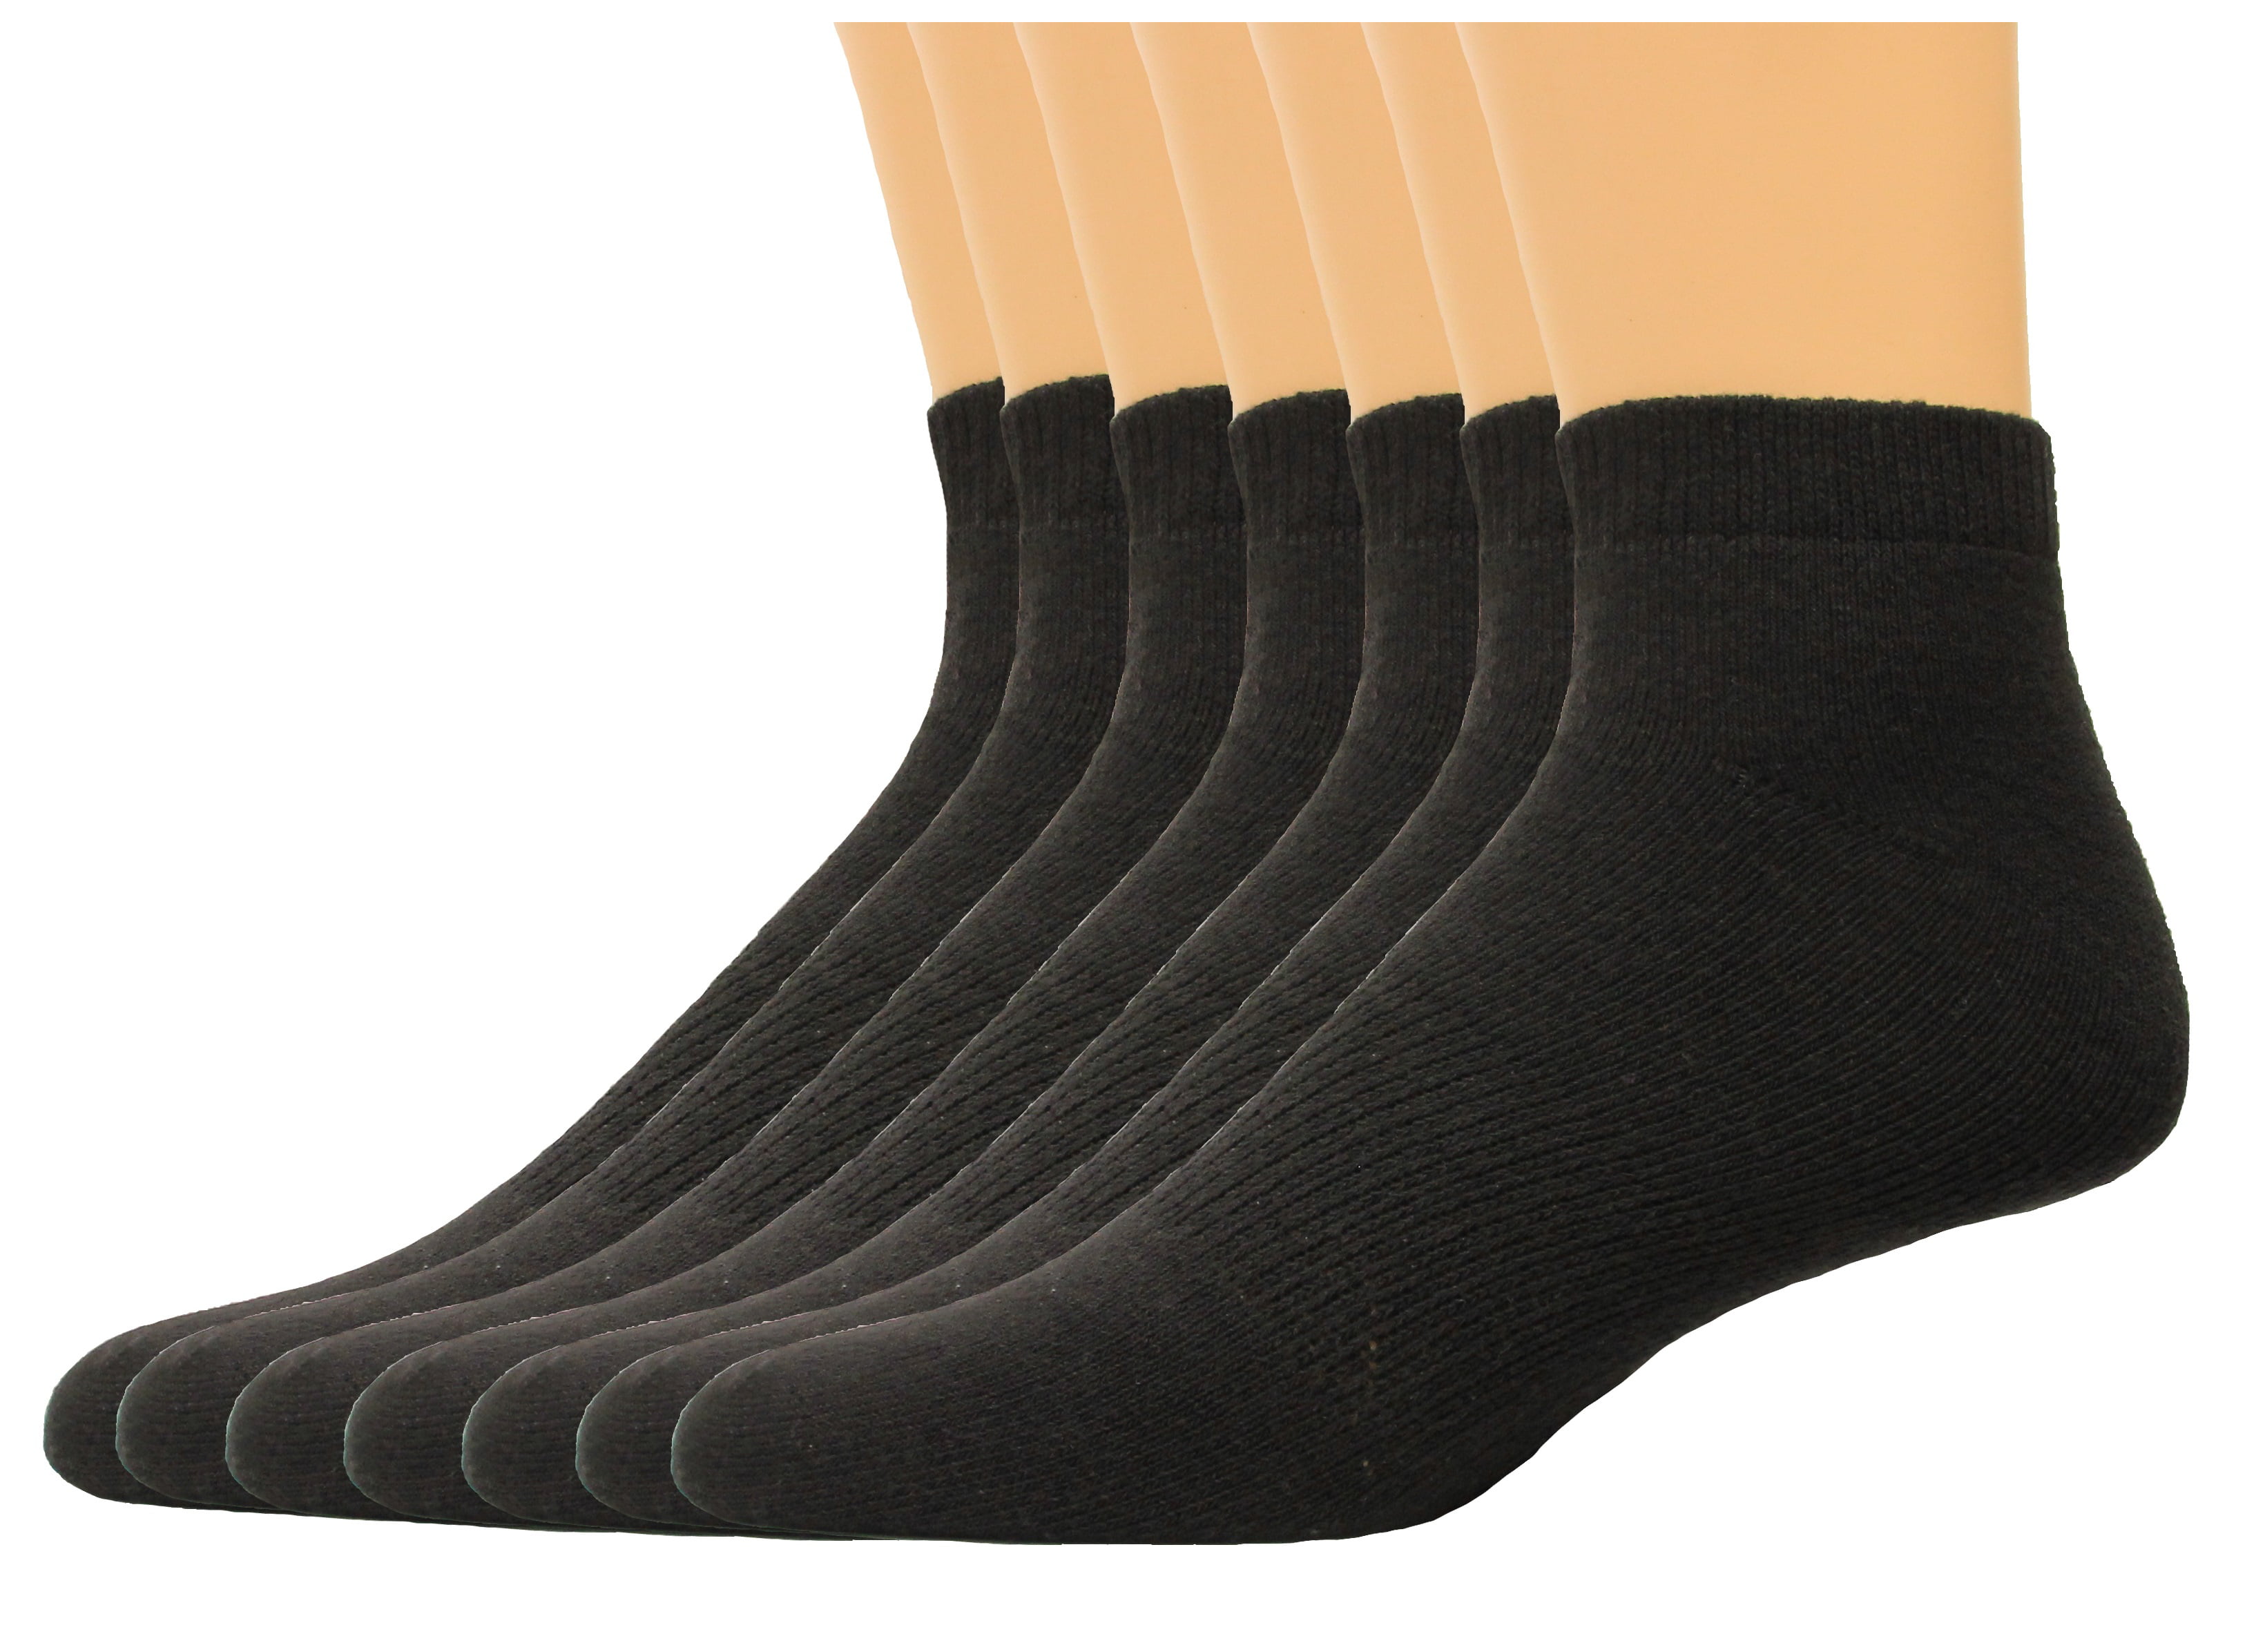 Lee Men's Low Cut Sport Socks 7 Pair, Black, Men's 6-12 - Walmart.com